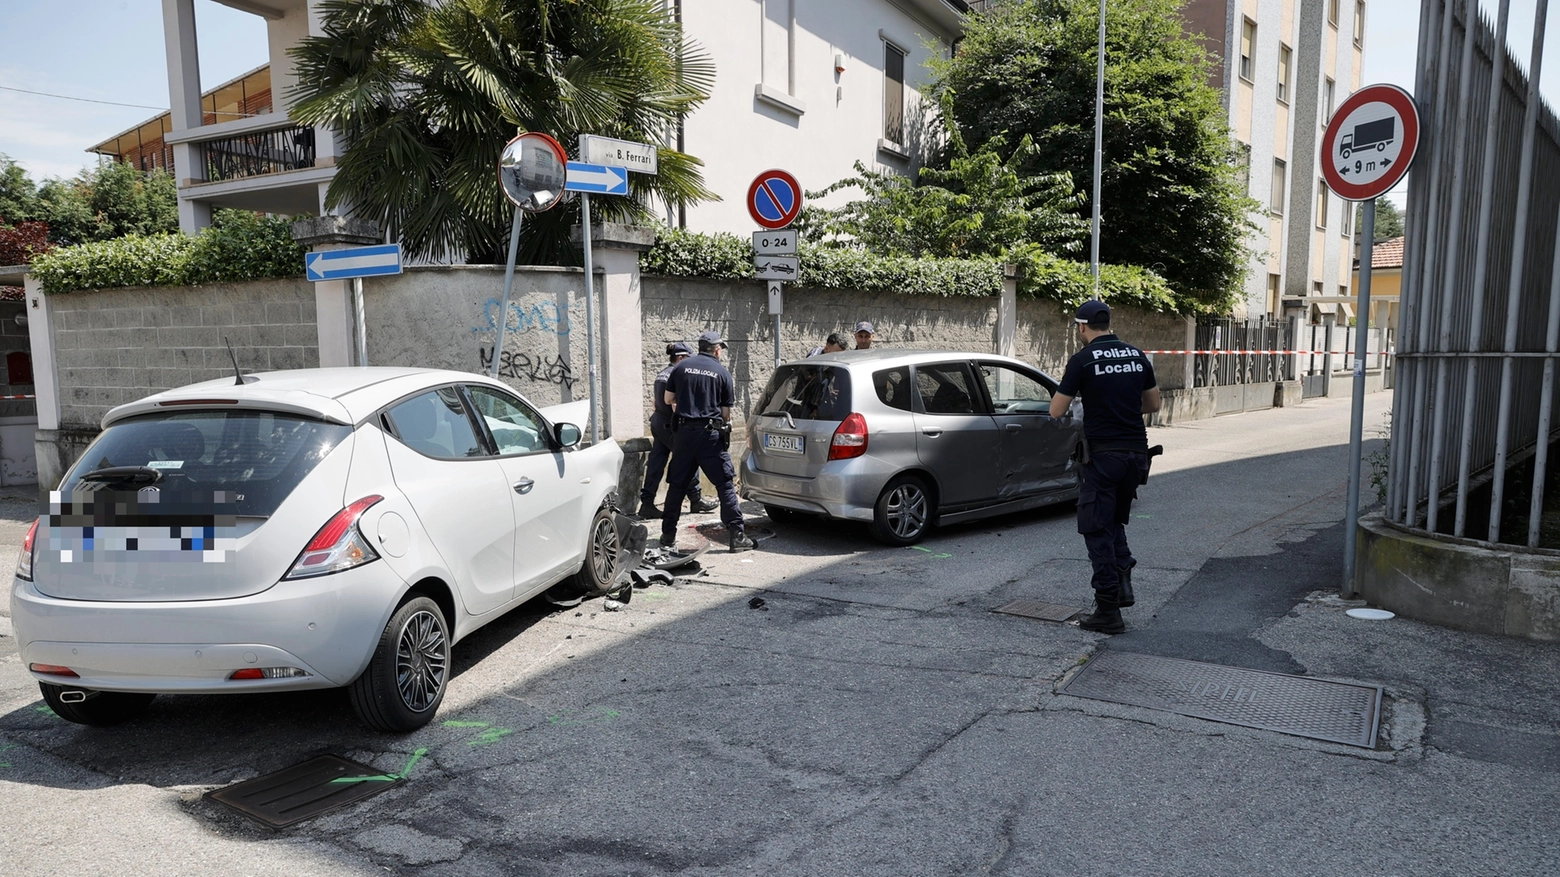 Le due auto coinvolte nell'incidente in via Mentana a Vigevano (Sacchiero)